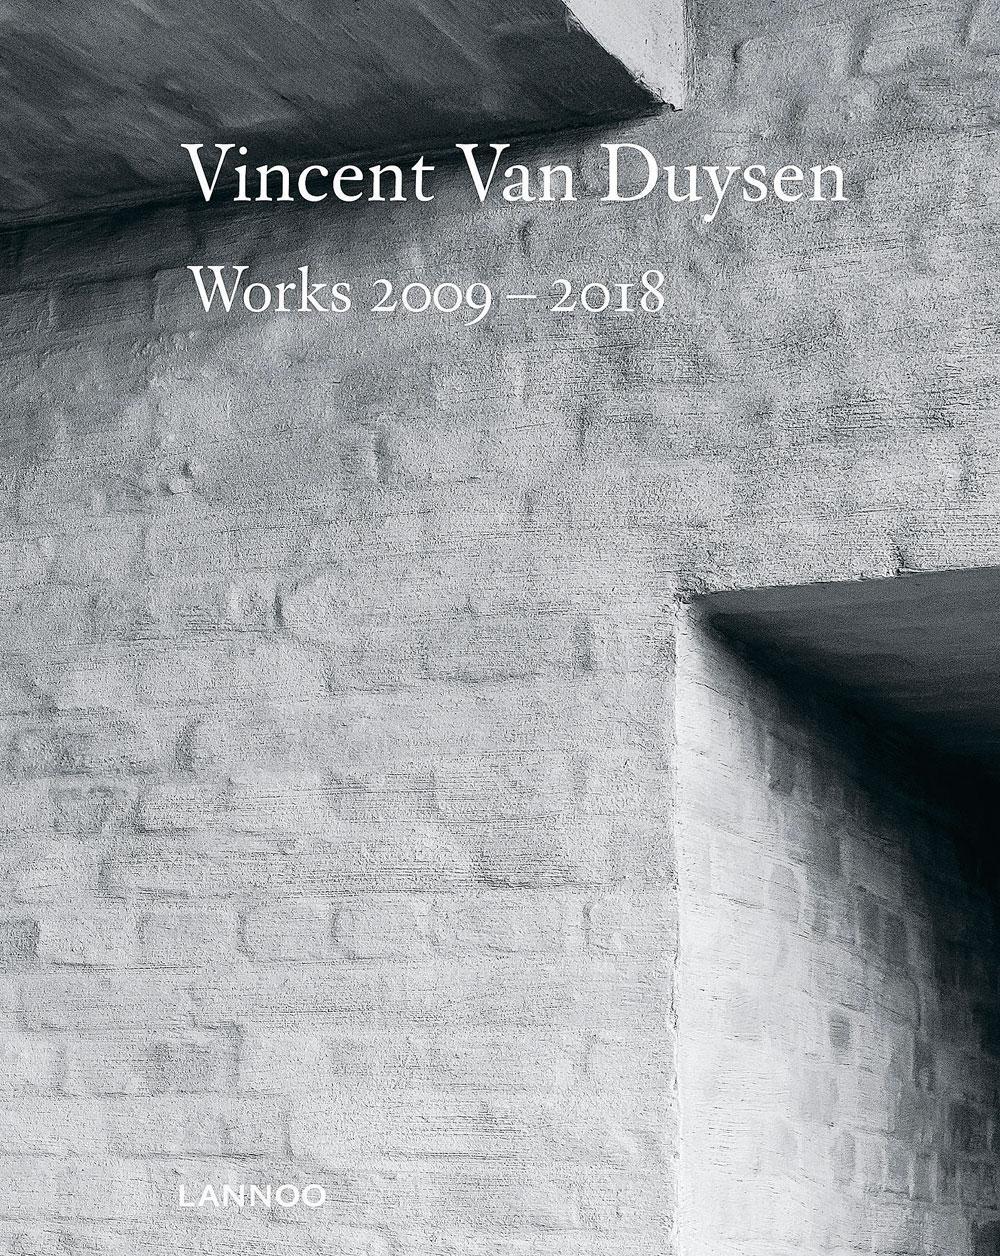 Les dix dernières années de travail de l'architecte belge Vincent Van Duysen